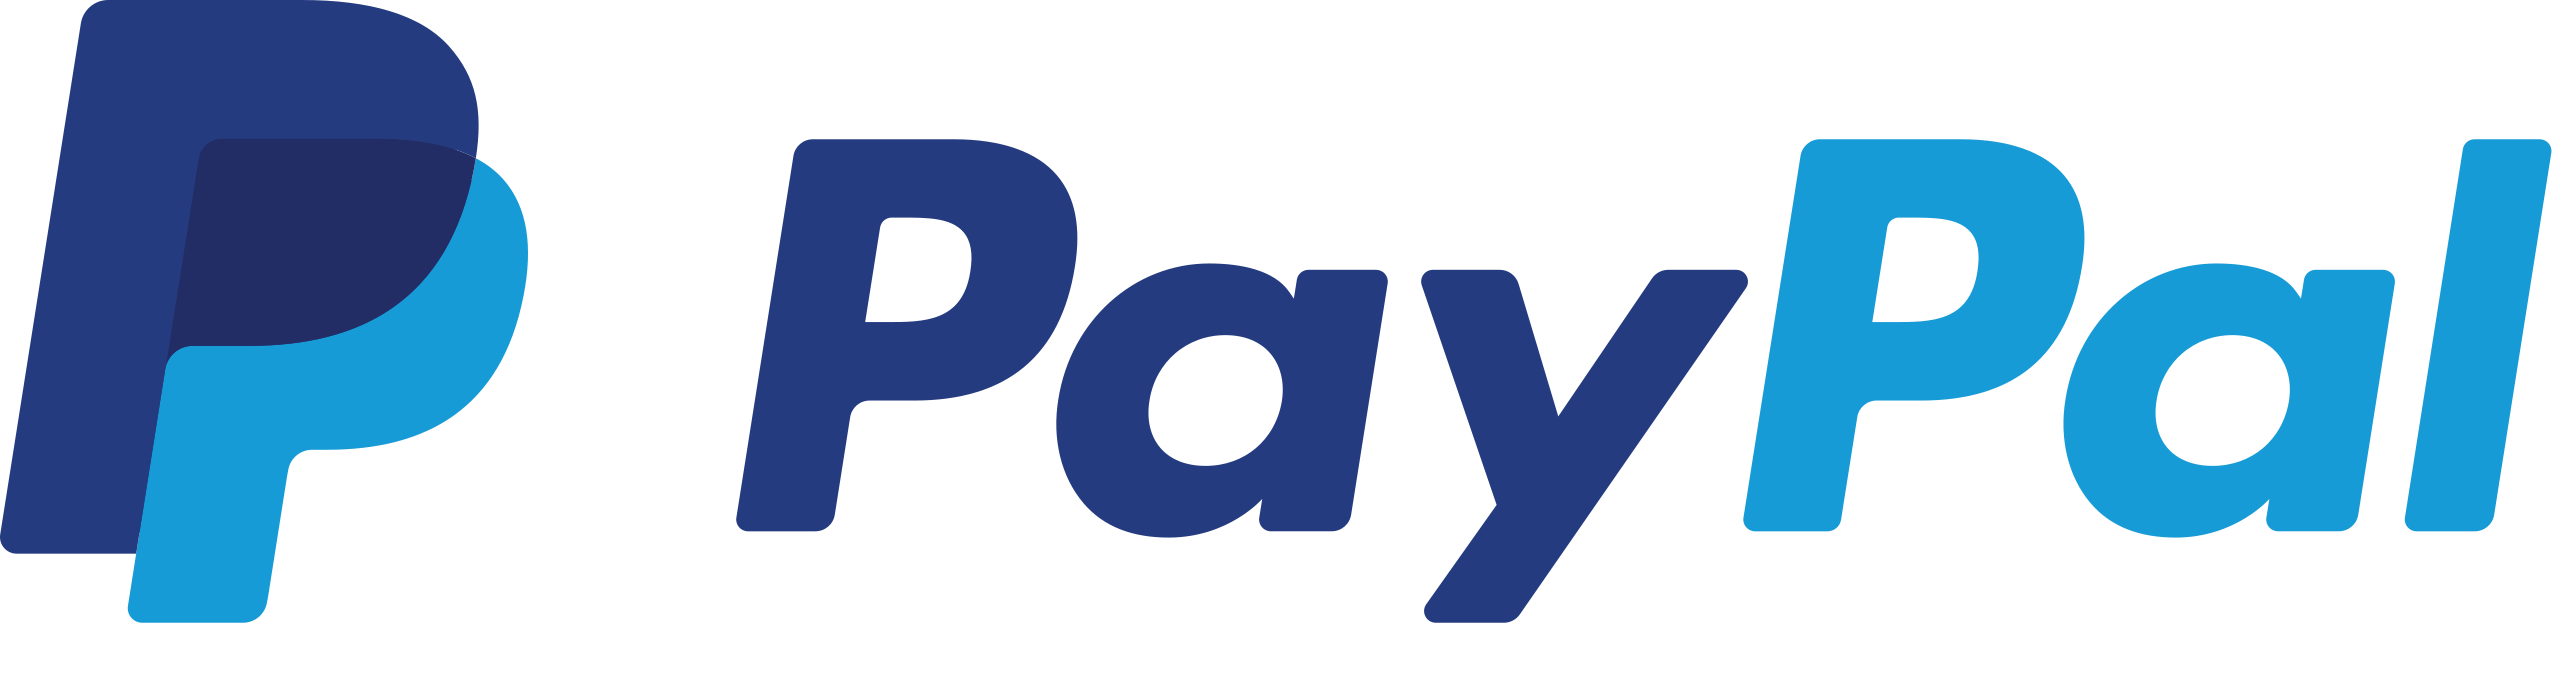 Agwanet partenaire et intégrateur des solutions de paiement en ligne de Paypal